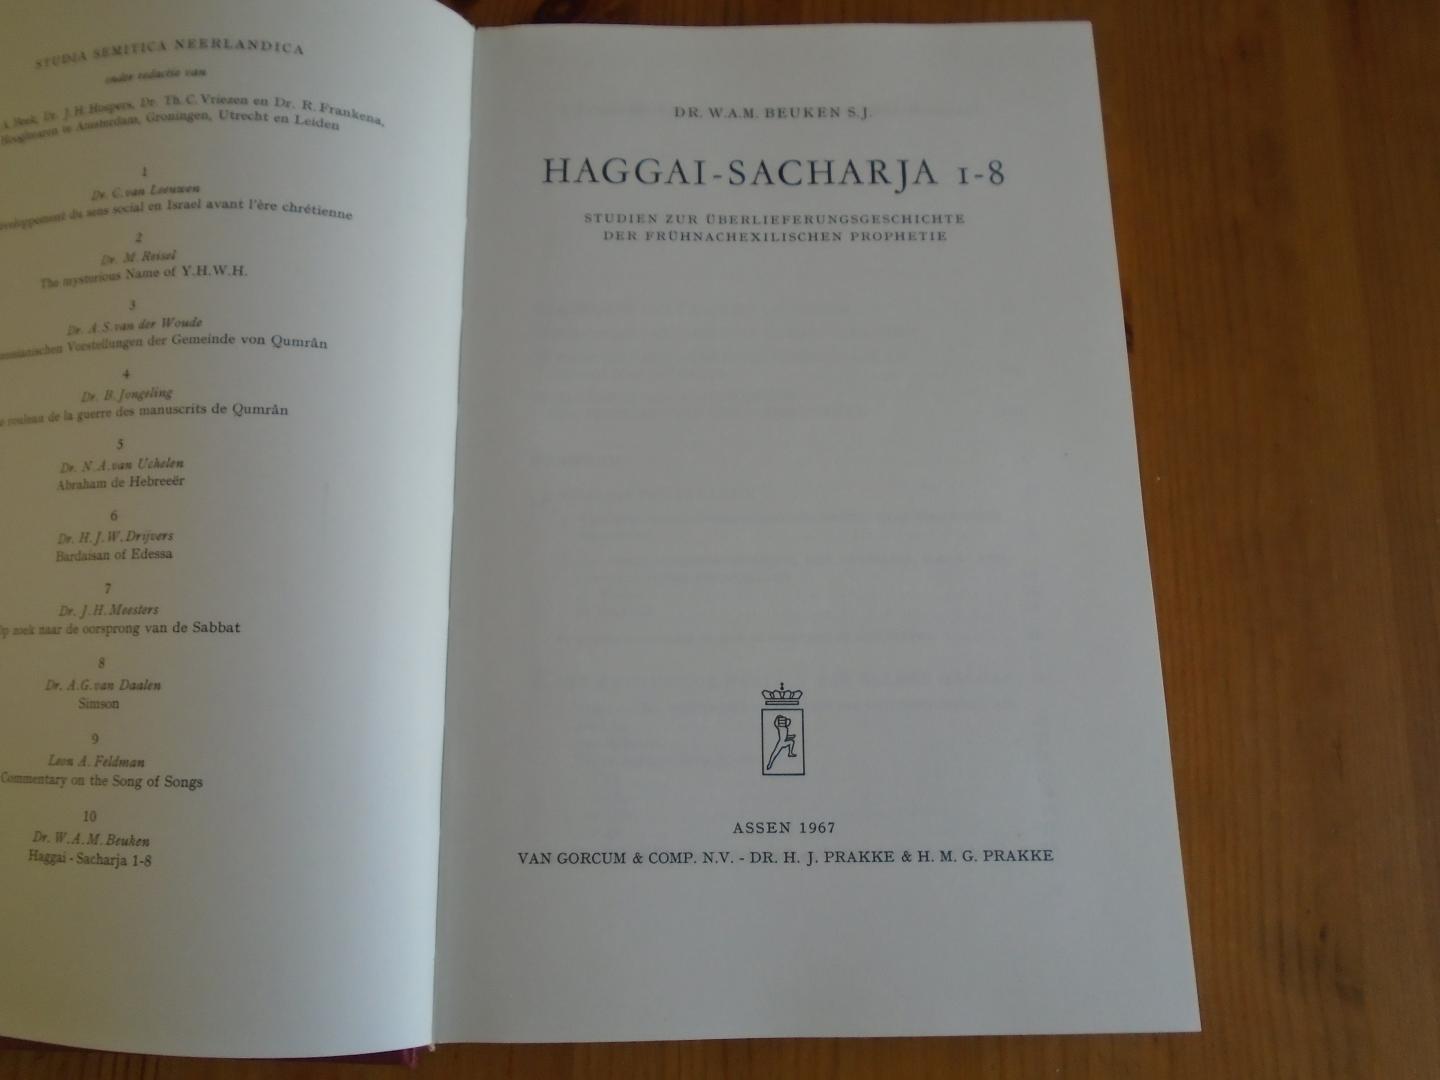 Beuken, W.A.M. - Haggai-Sacharja 1-8. Studien zur Überlieferungsgeschichte der frühnachexilischen Prophetie